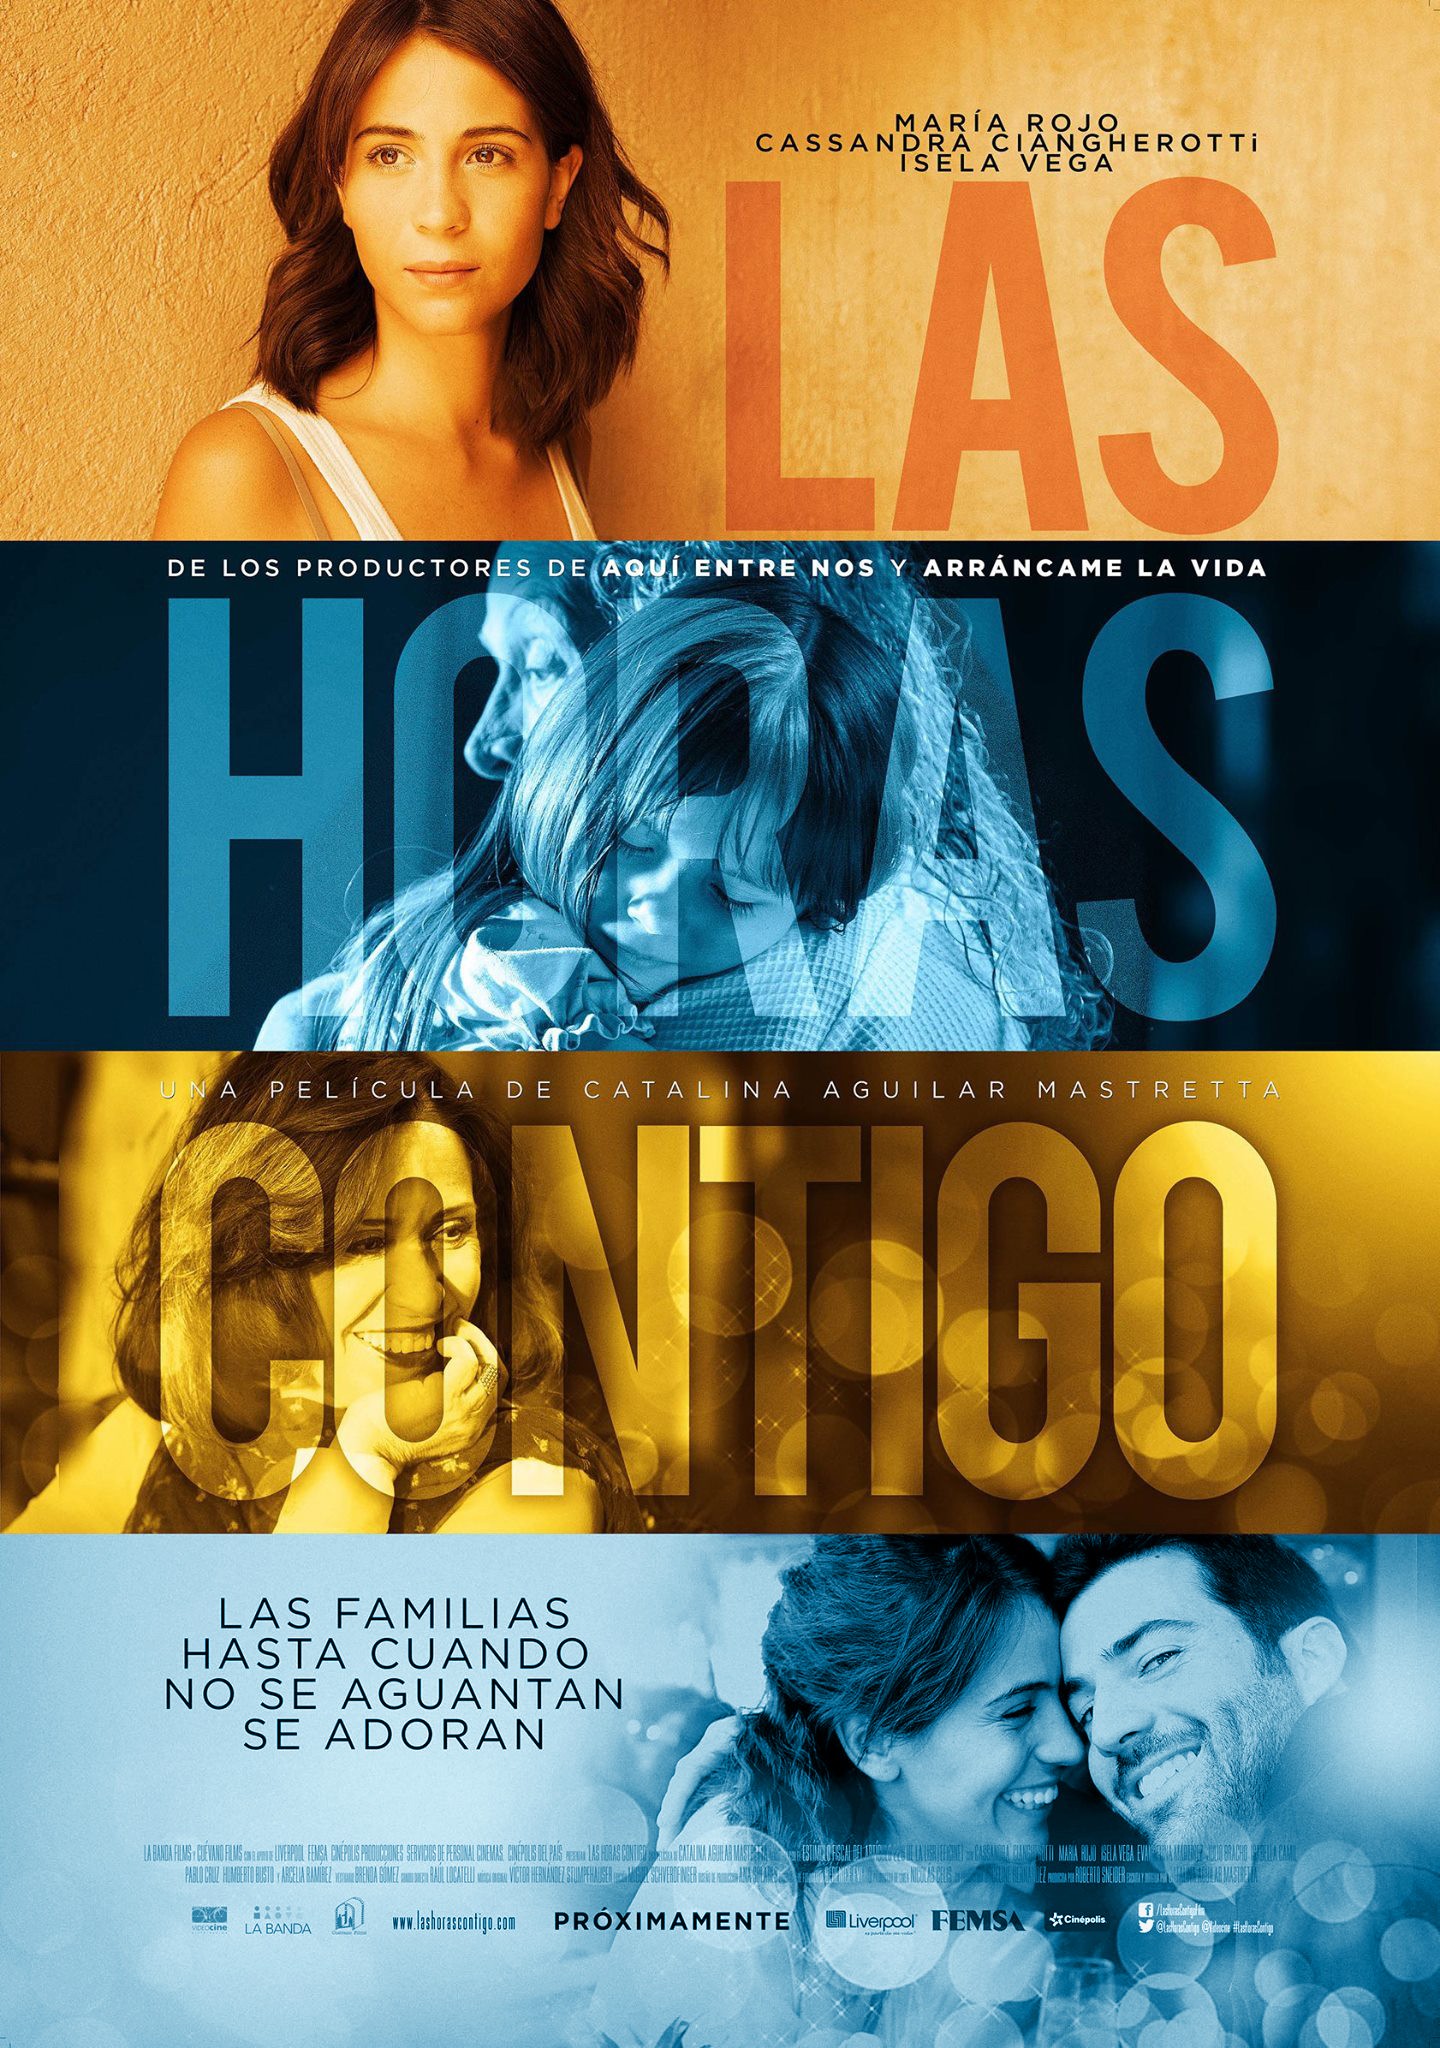 Mega Sized Movie Poster Image for Las horas contigo (#2 of 2)